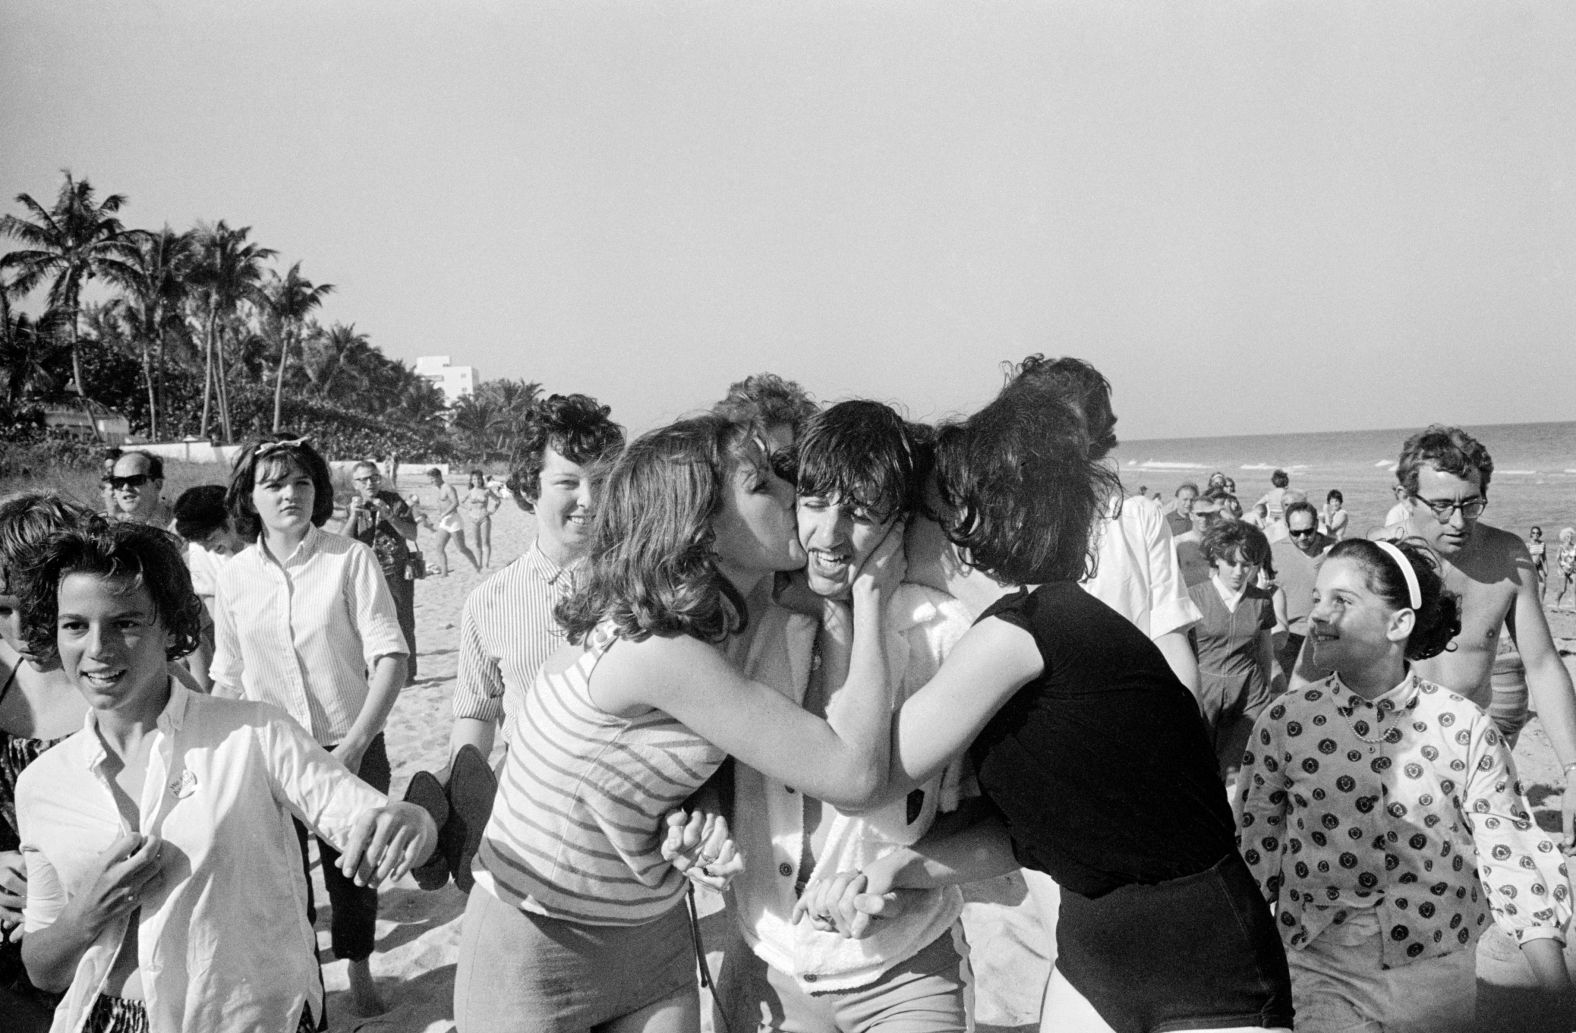 Starr is besieged by schoolgirls as he strolls on a beach in Miami in February 1964.